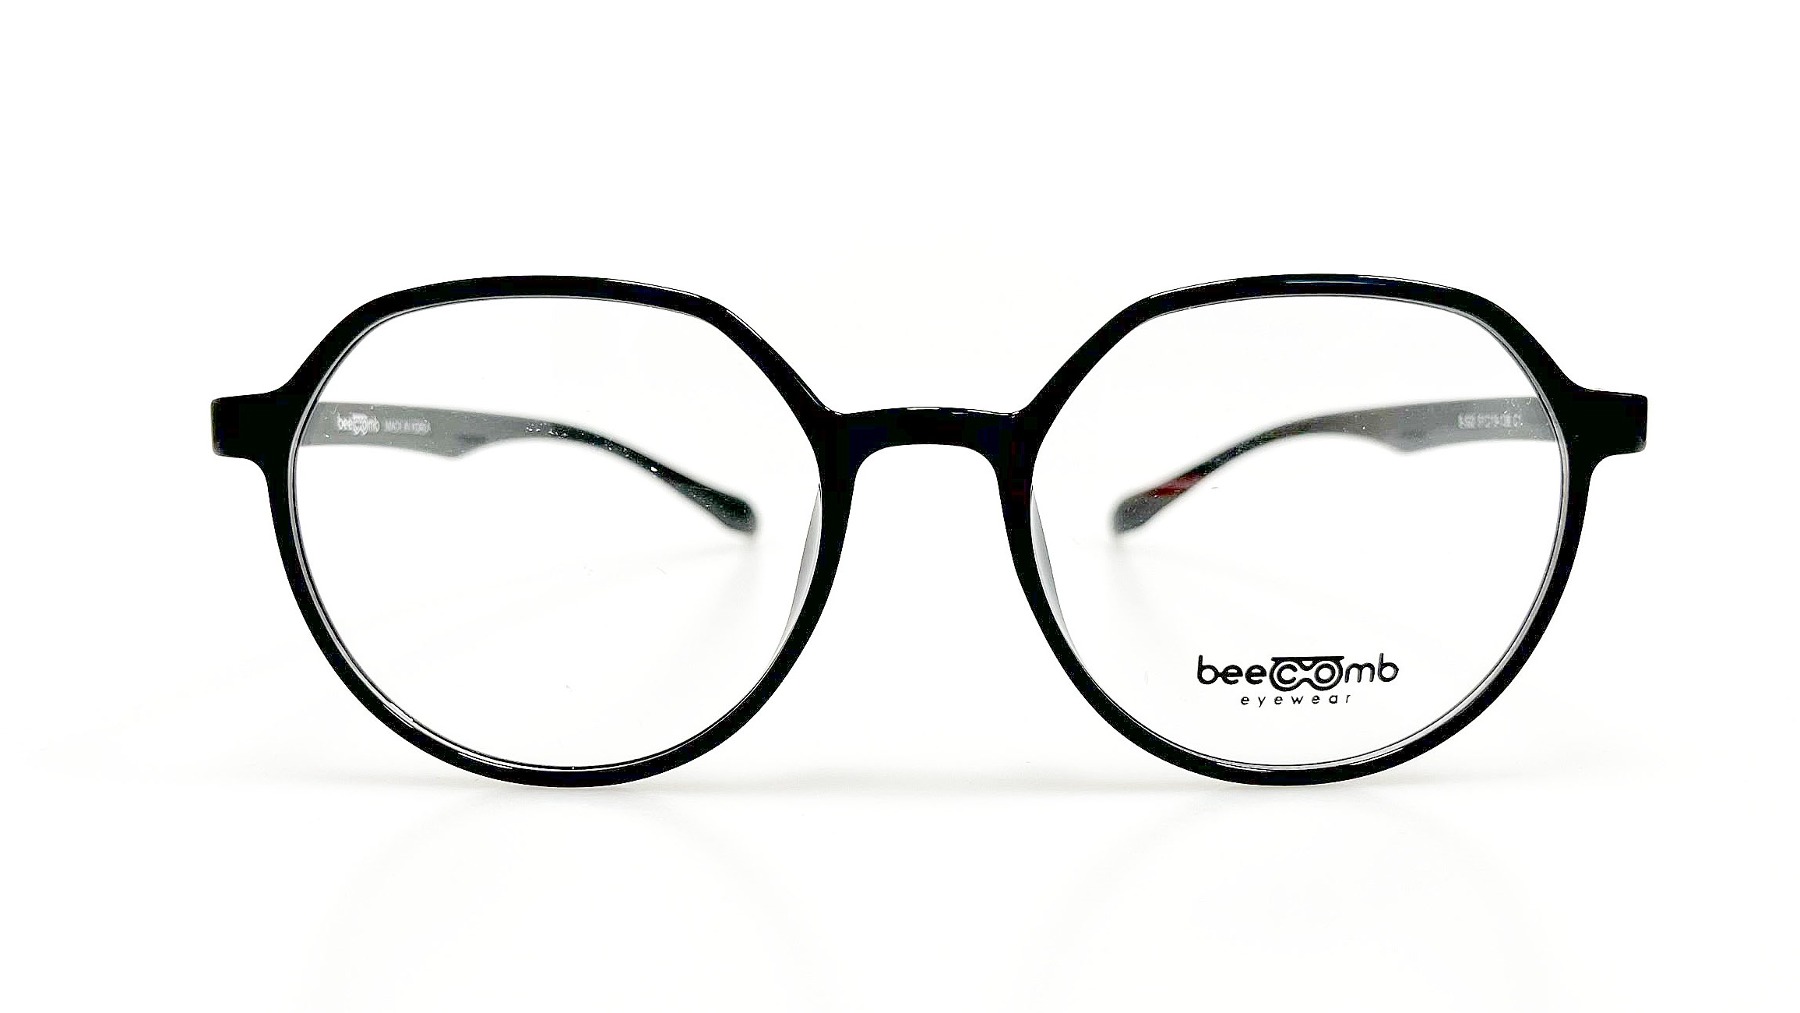 B-522, Korean glasses, sunglasses, eyeglasses, glasses